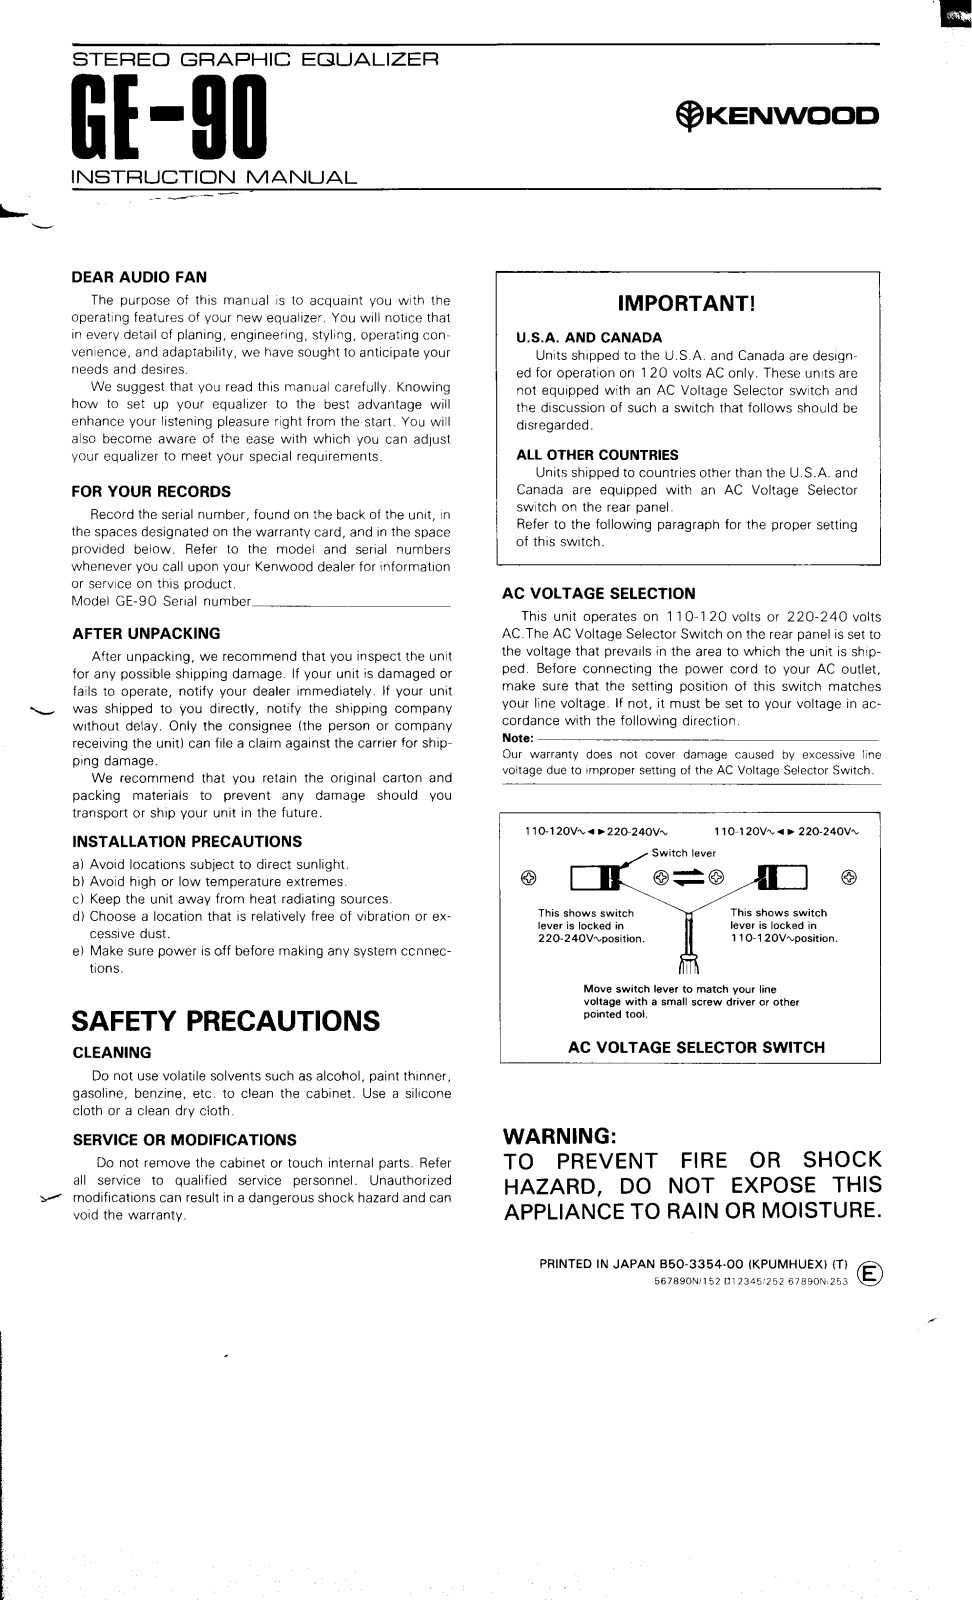 Kenwood GE-90 Owner's Manual